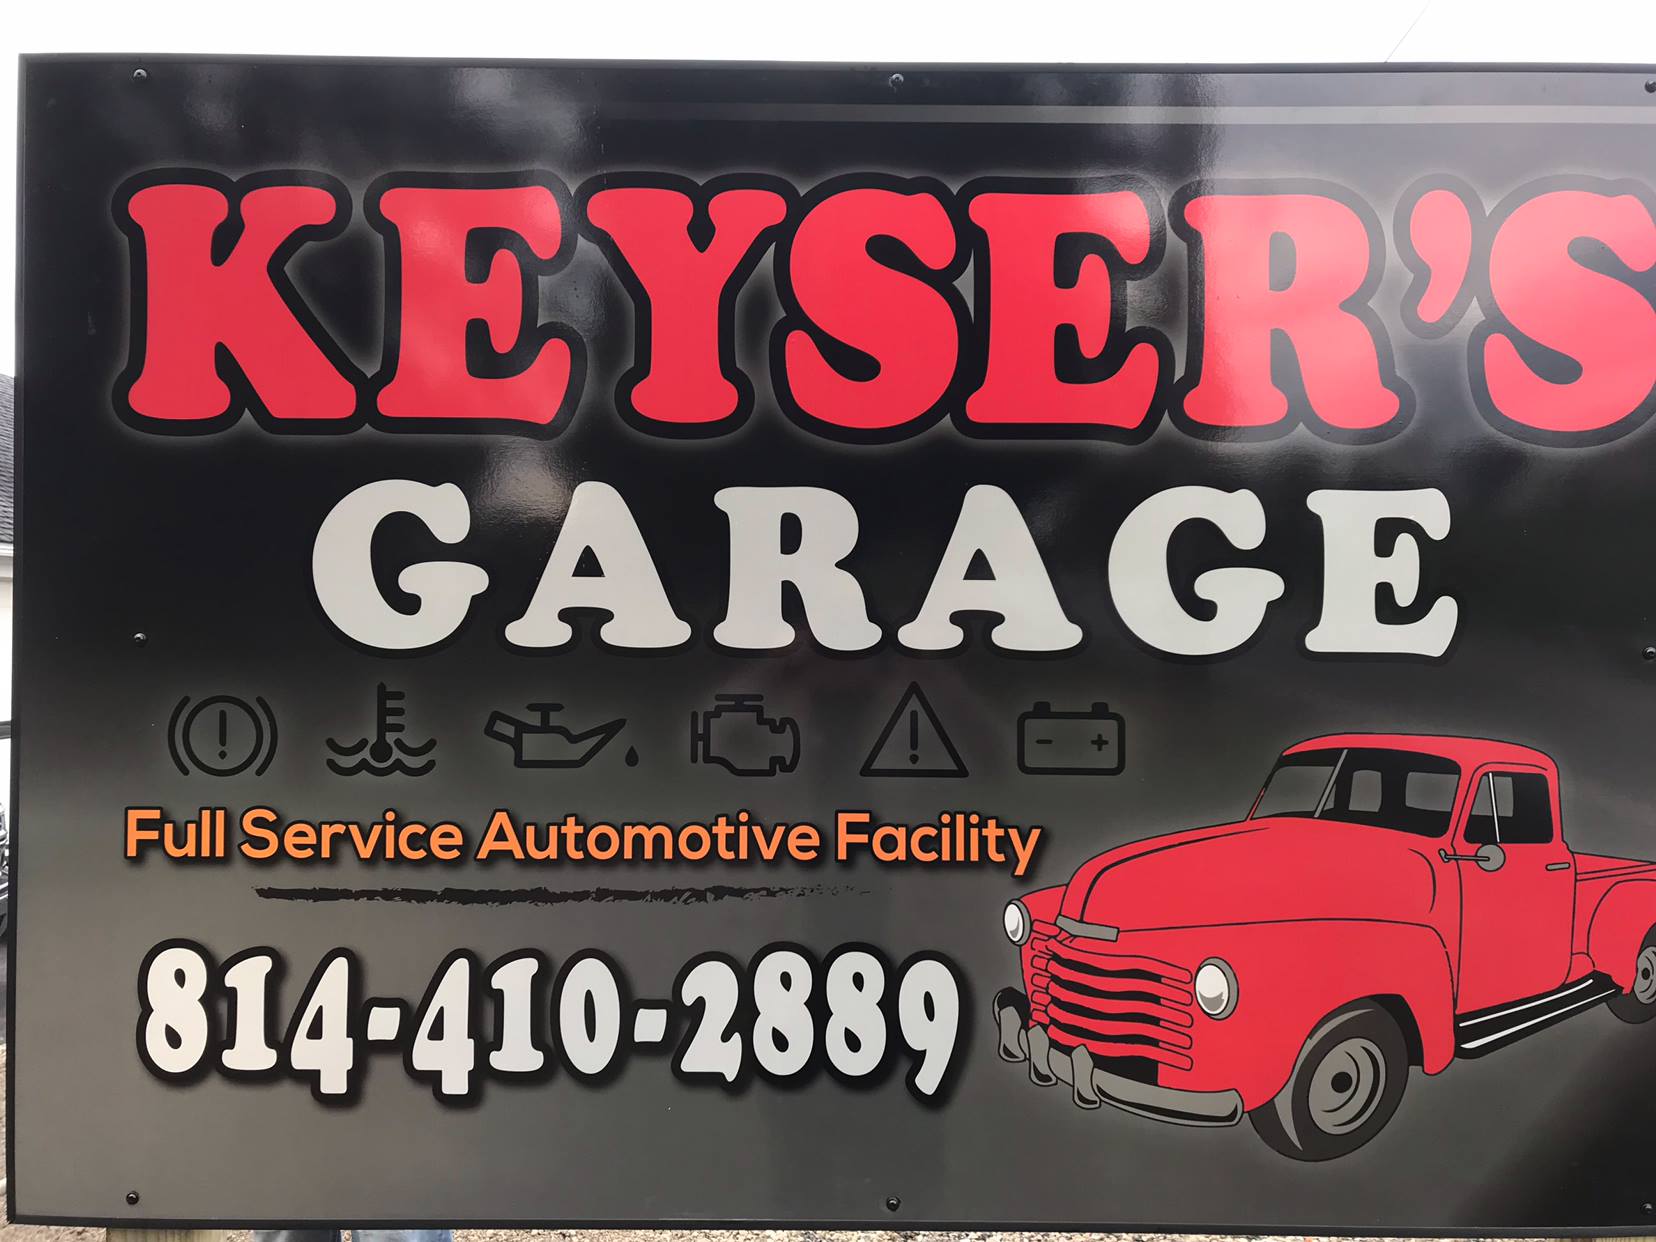 new keysers garage logo.jpg